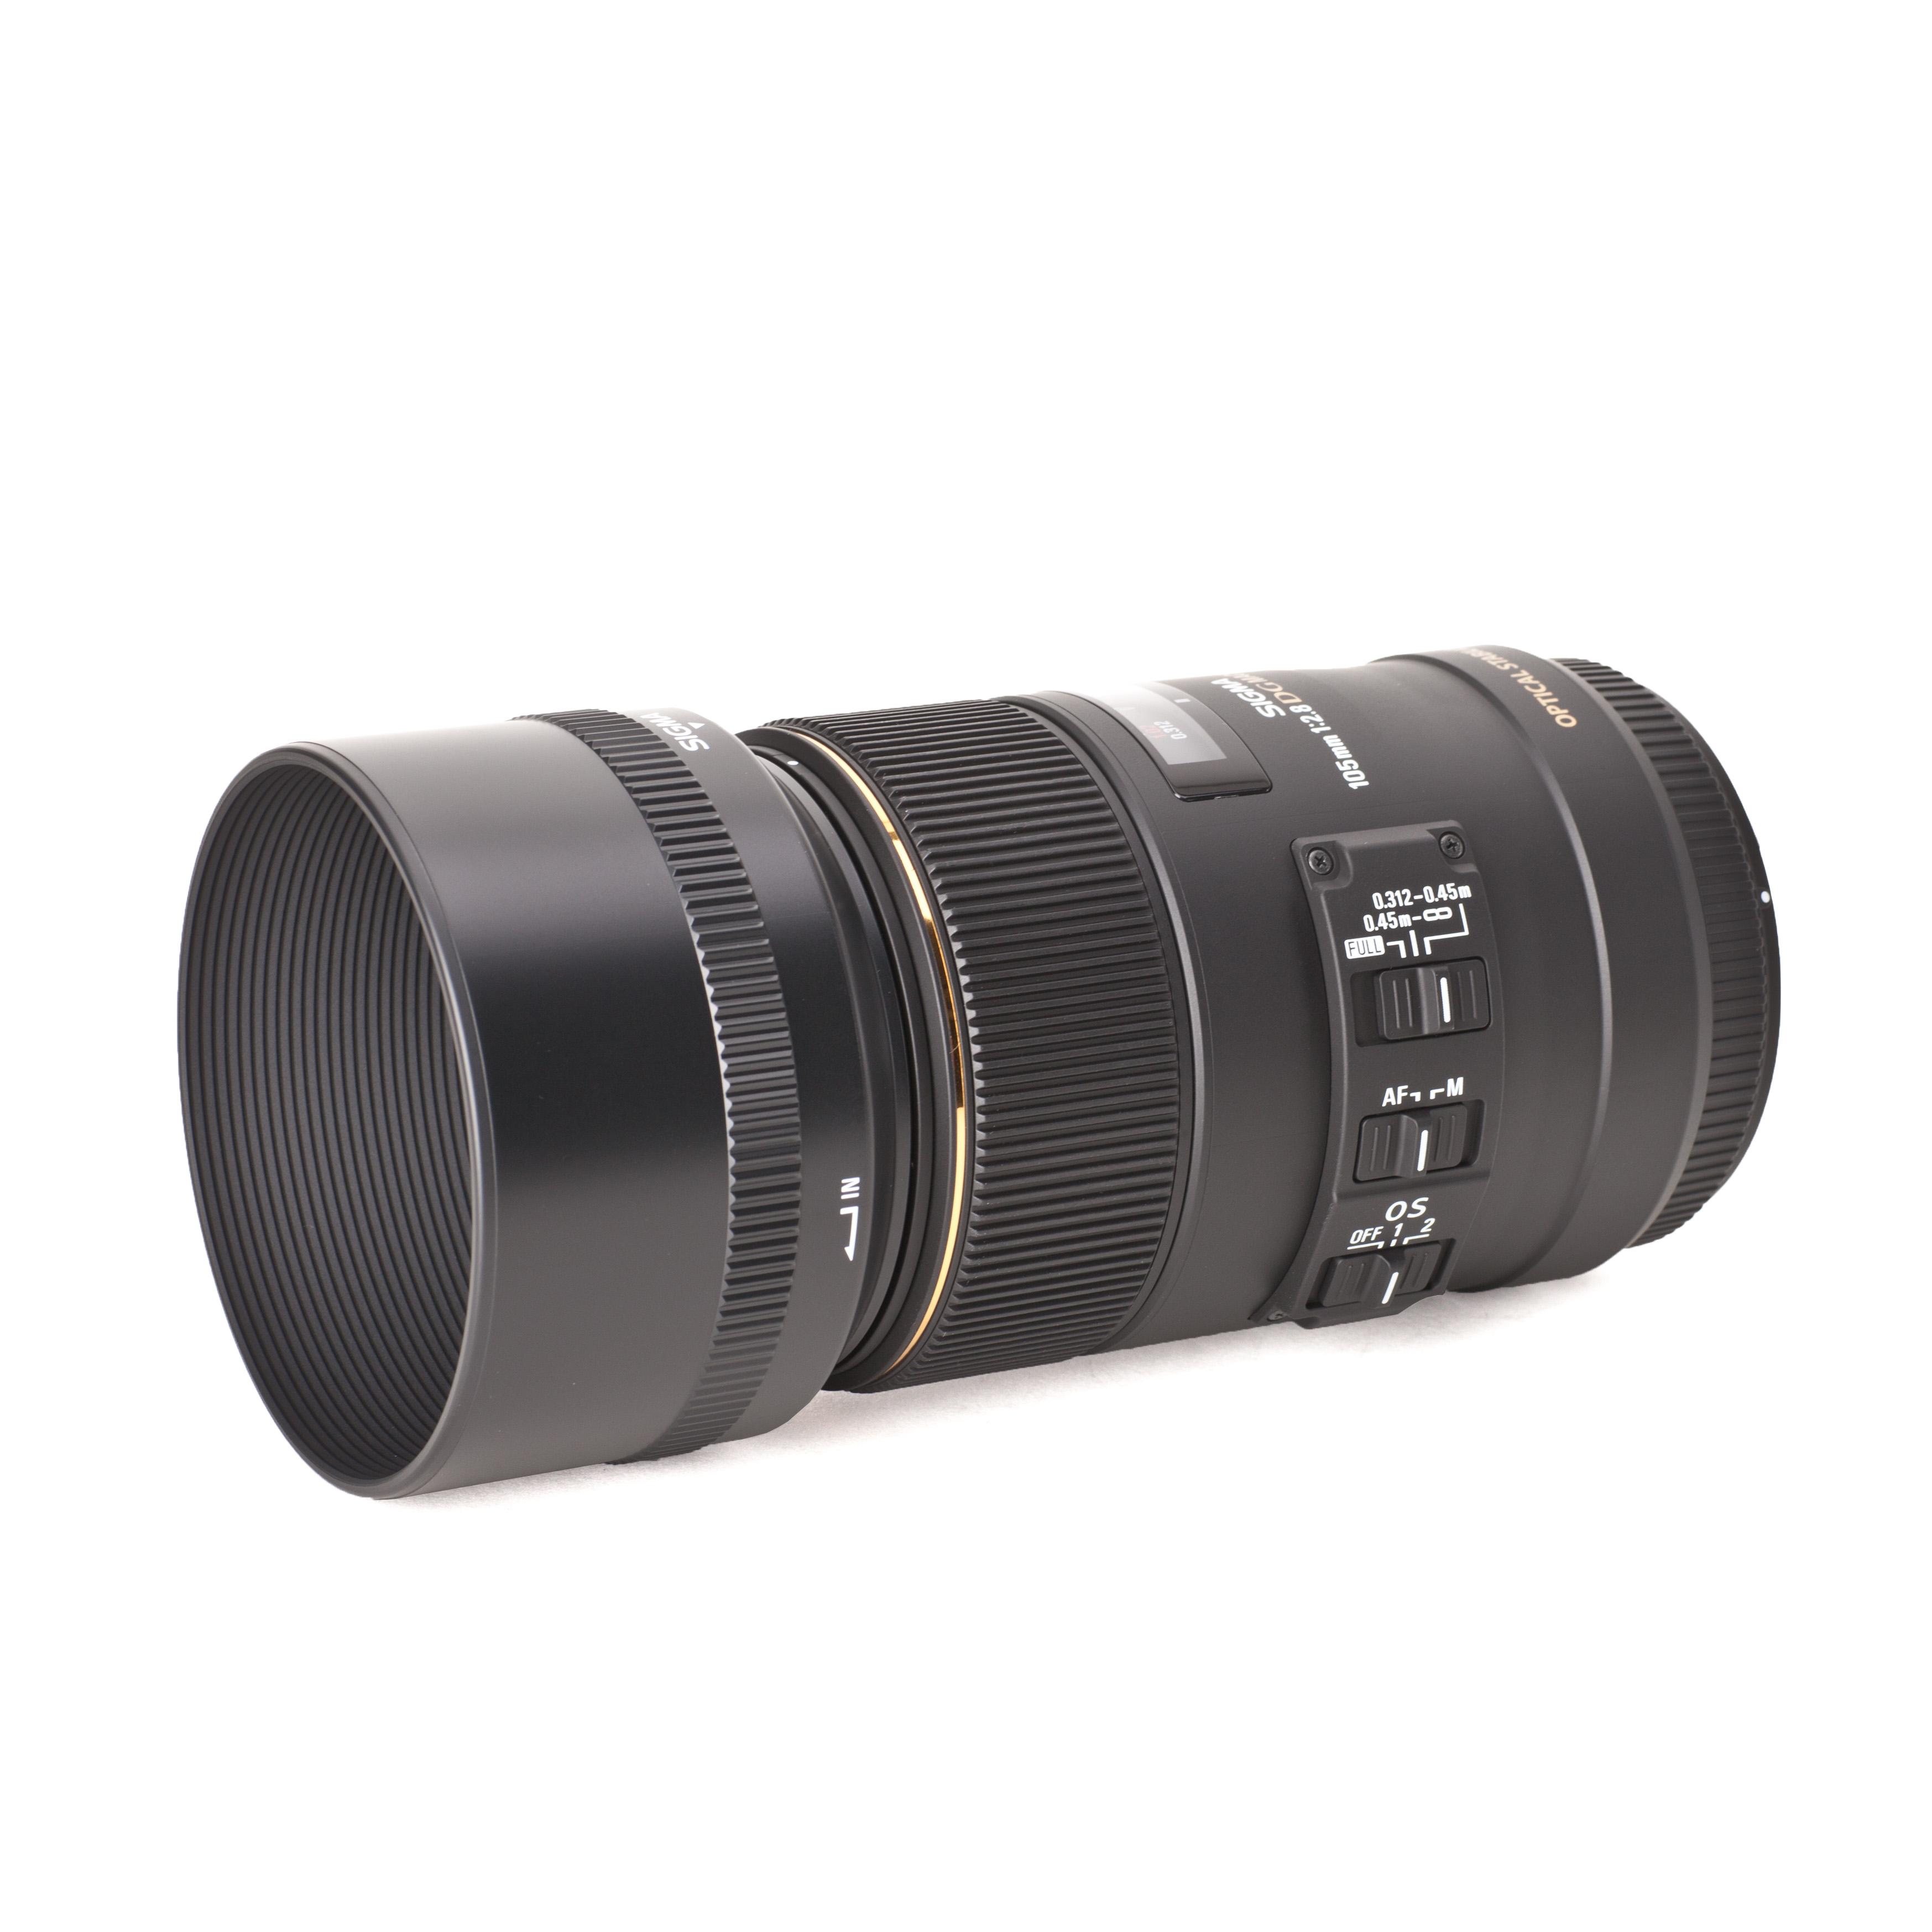 Sigma 105mm f2.8 EX DG Macro OS HSM obiettivo macro a focale fissa di alta qualità per Nikon